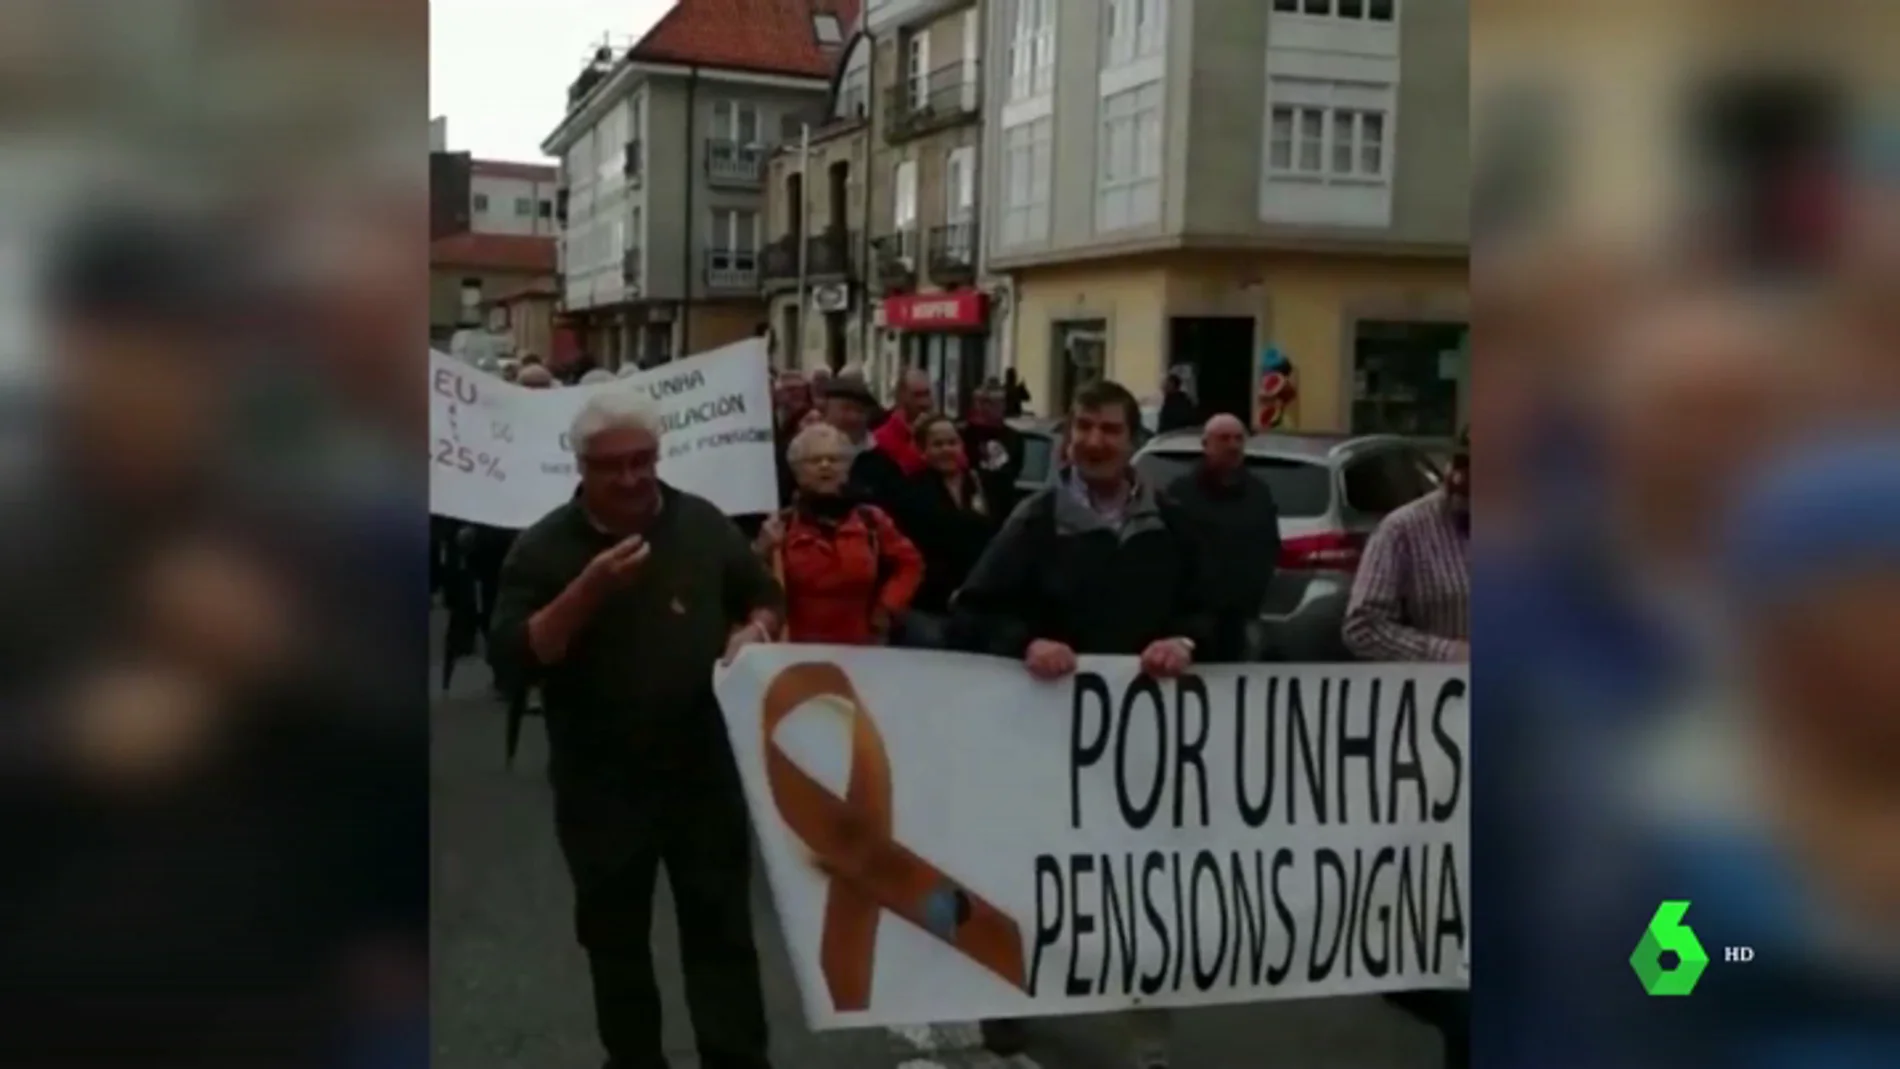 Jubilados se manifiestan en Galicia por las pensiones dignas